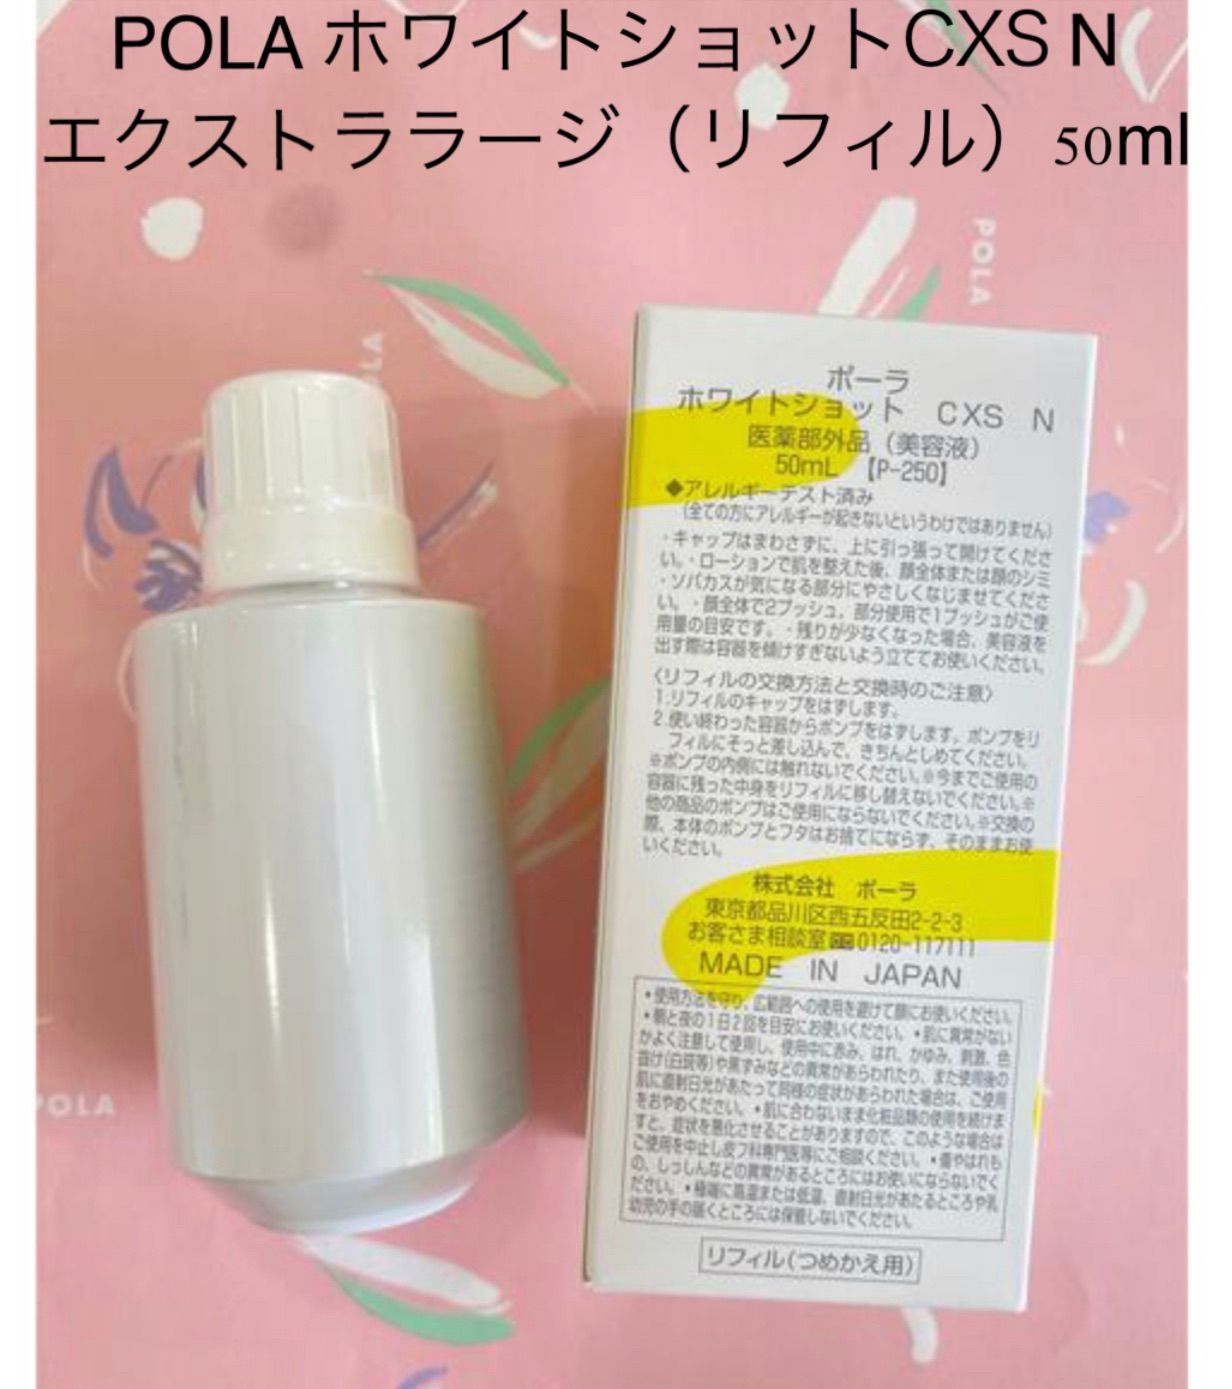 コスメ/美容POLA ホワイトショット ラージレフィル - 美容液